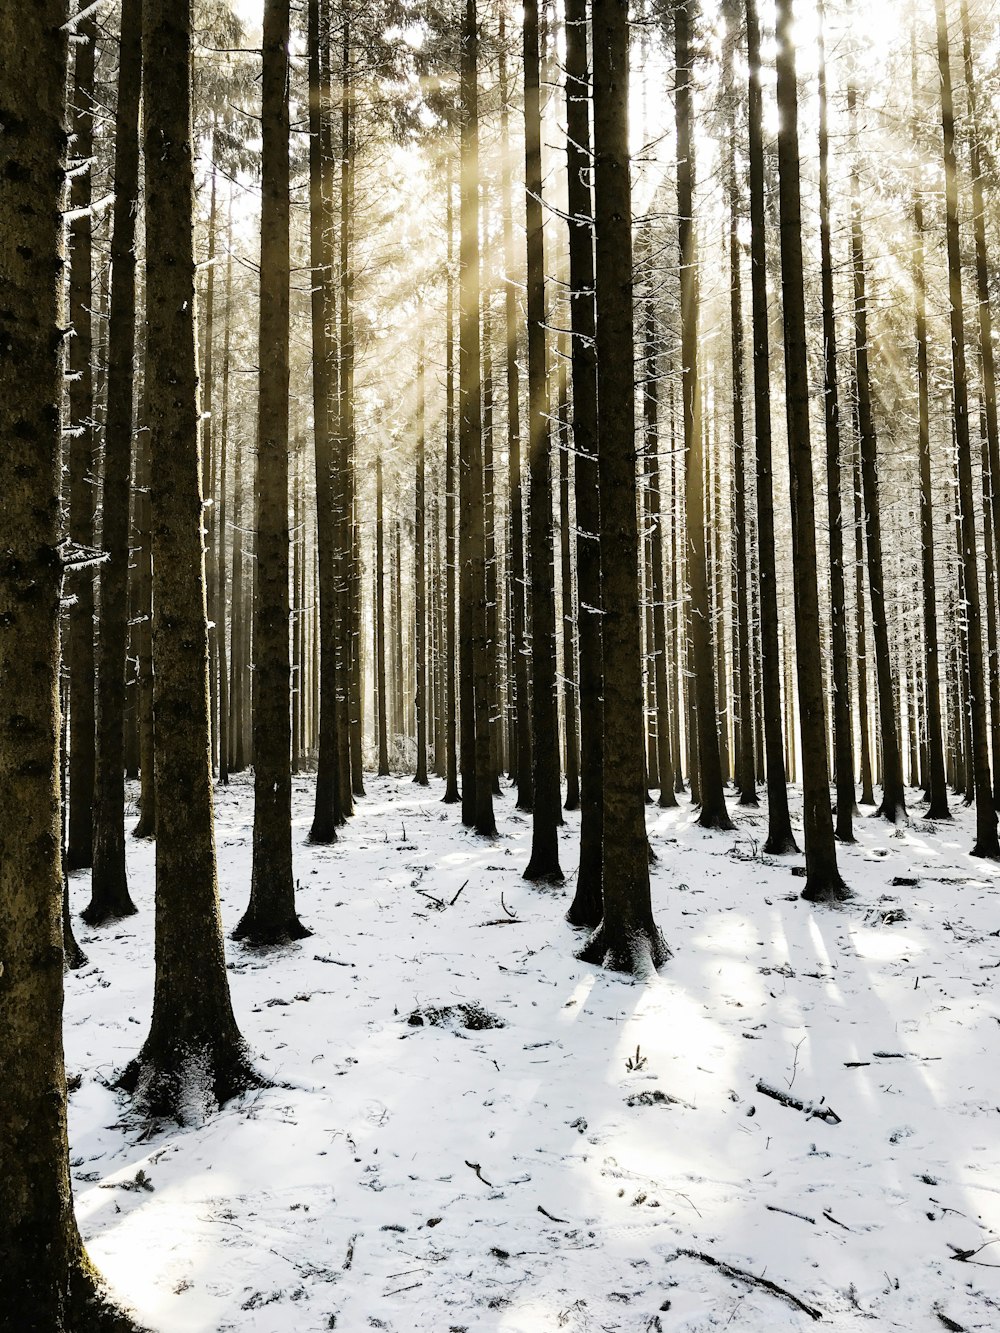 Gli alberi marroni coprivano la neve durante il giorno